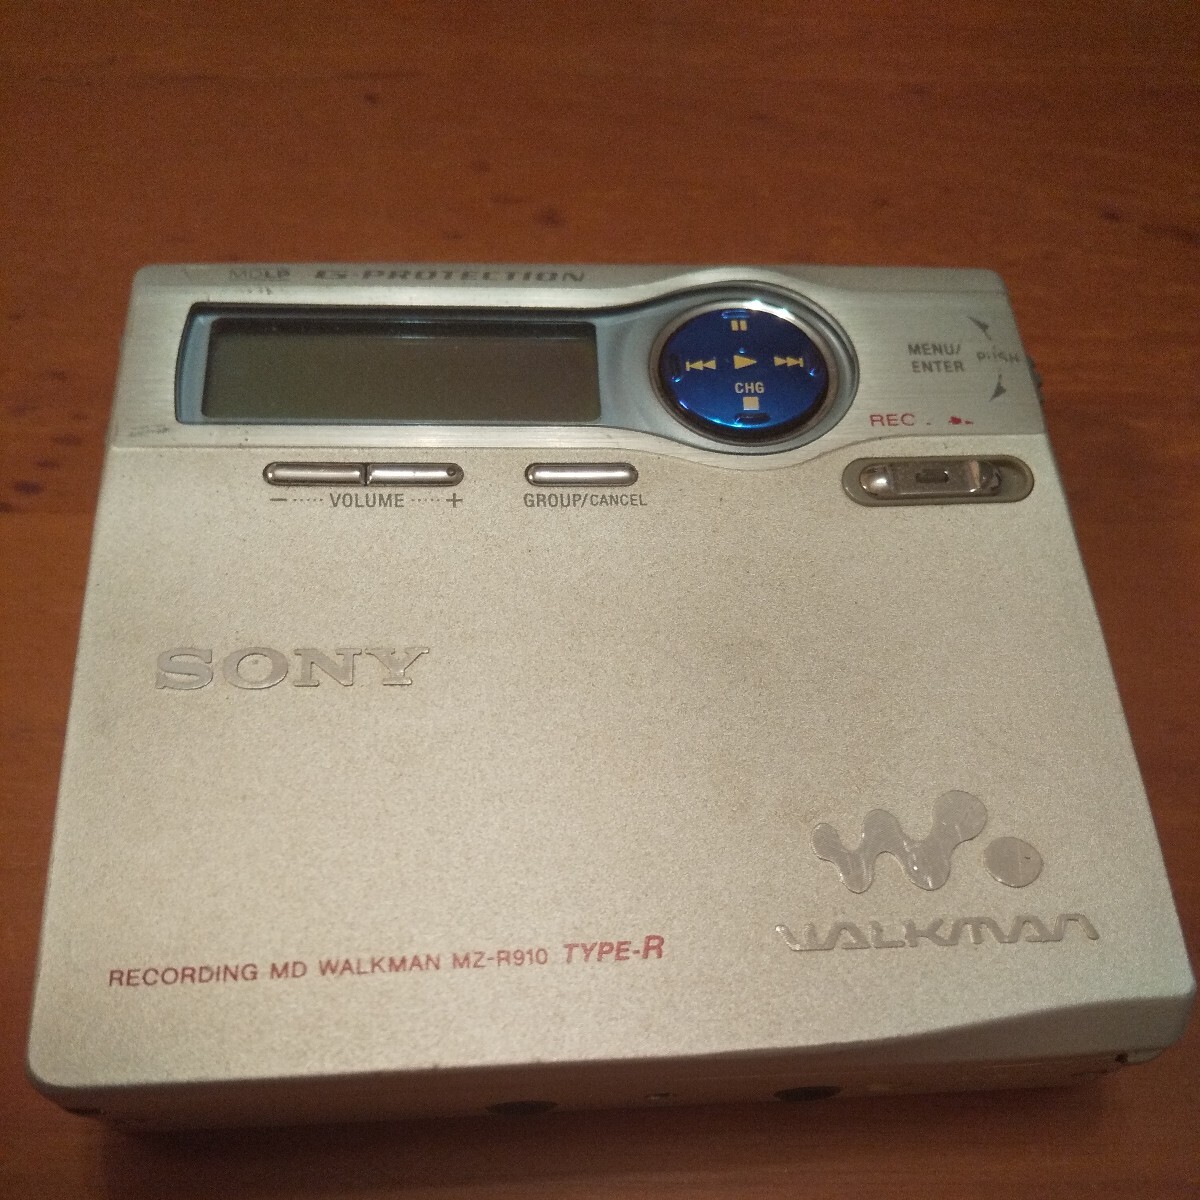 SONY запись MD Walkman MZ-R910 TYPE-R Junk 